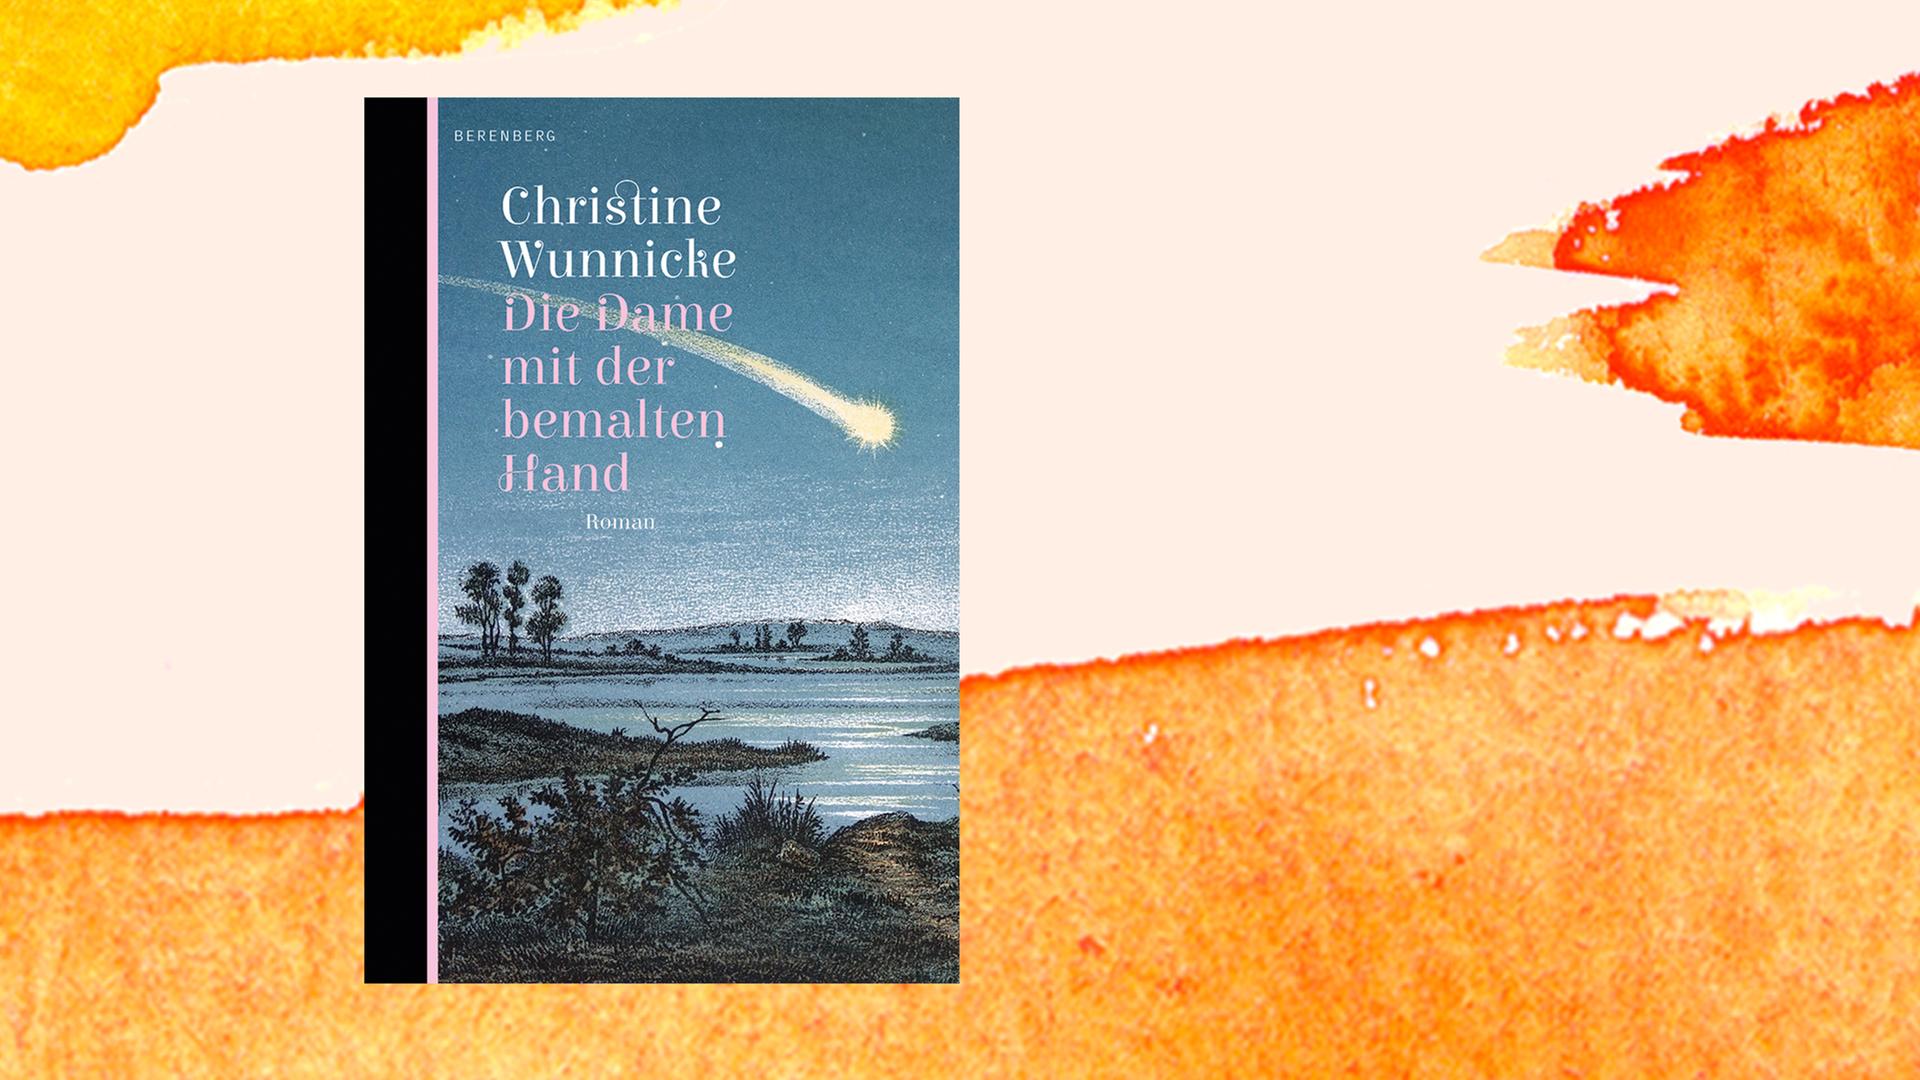 Cover des Romans "Die Dame mit der bemalten Hand" von Christine Wunnicke.